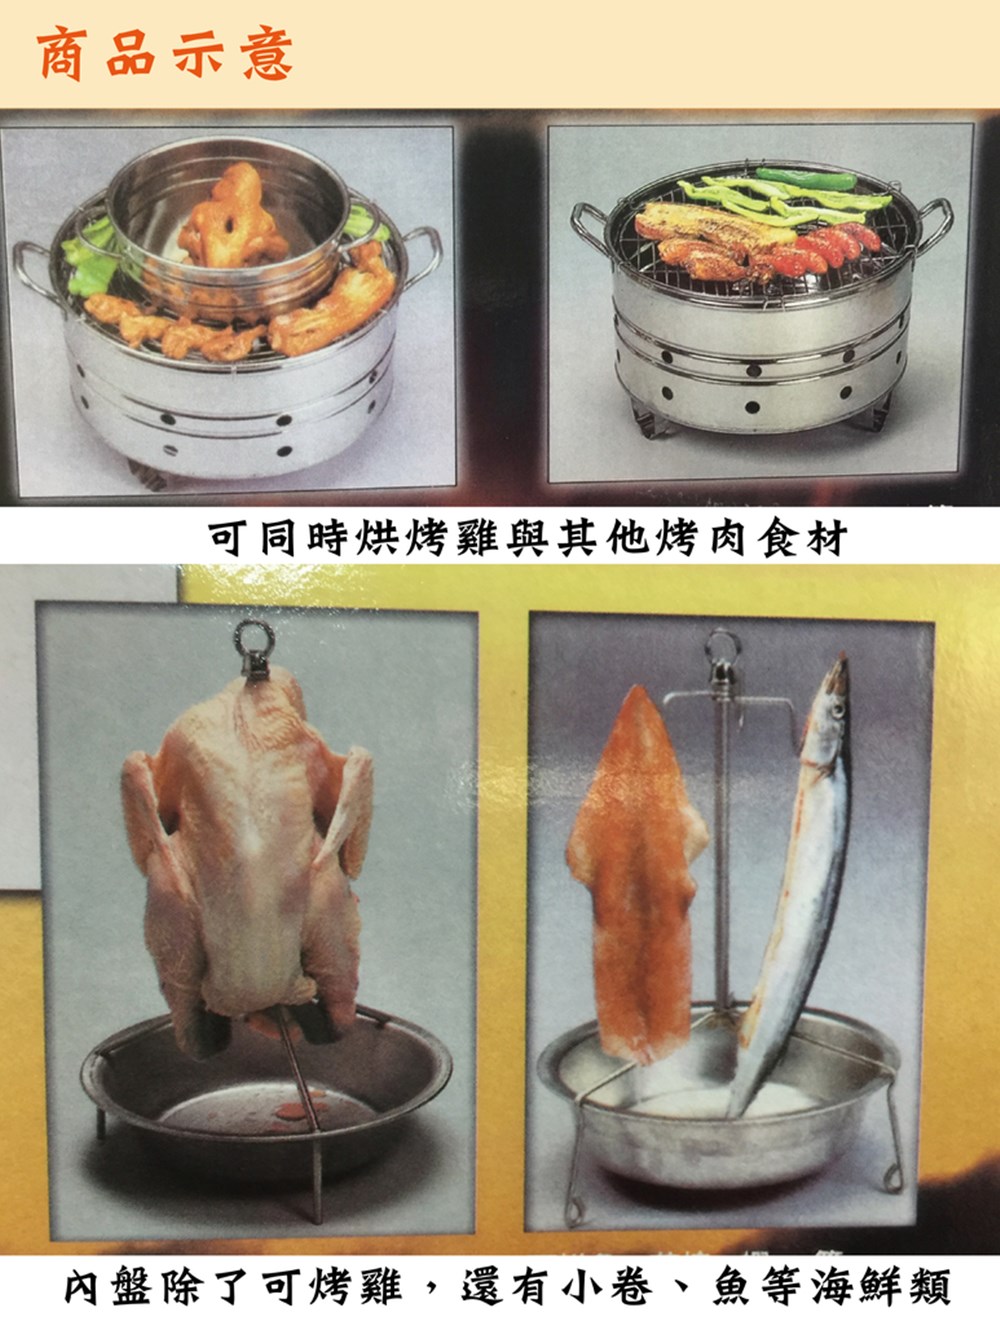 商品示意 可同時烘烤雞與其他烤肉食材 內盤除了可烤雞,還有小卷、魚等海鮮類 